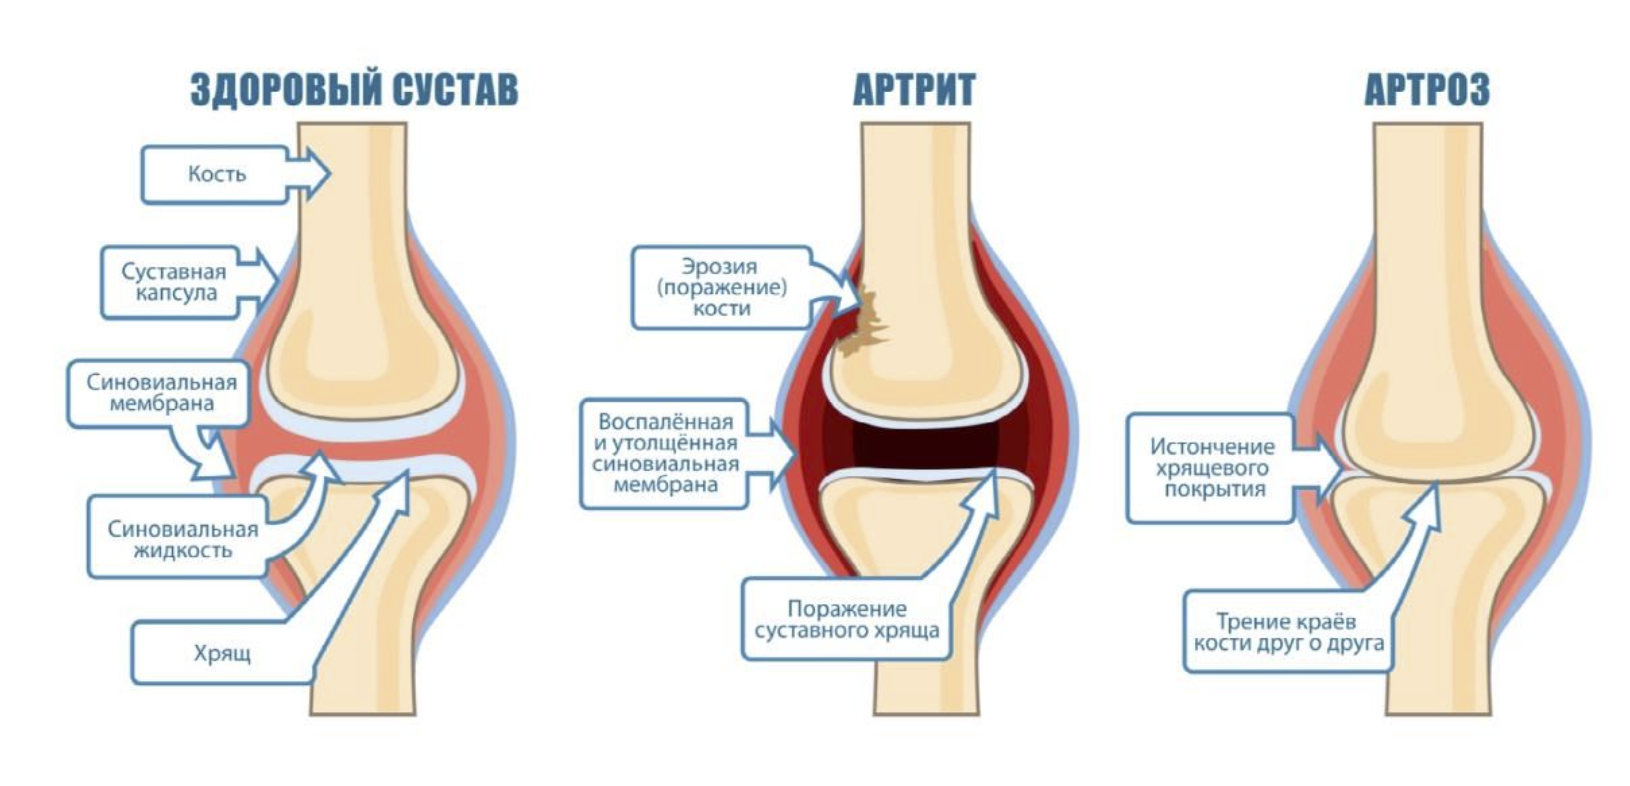 Артрит суставов: симптомы, диагностика, лечение - статьи от компании Еламед